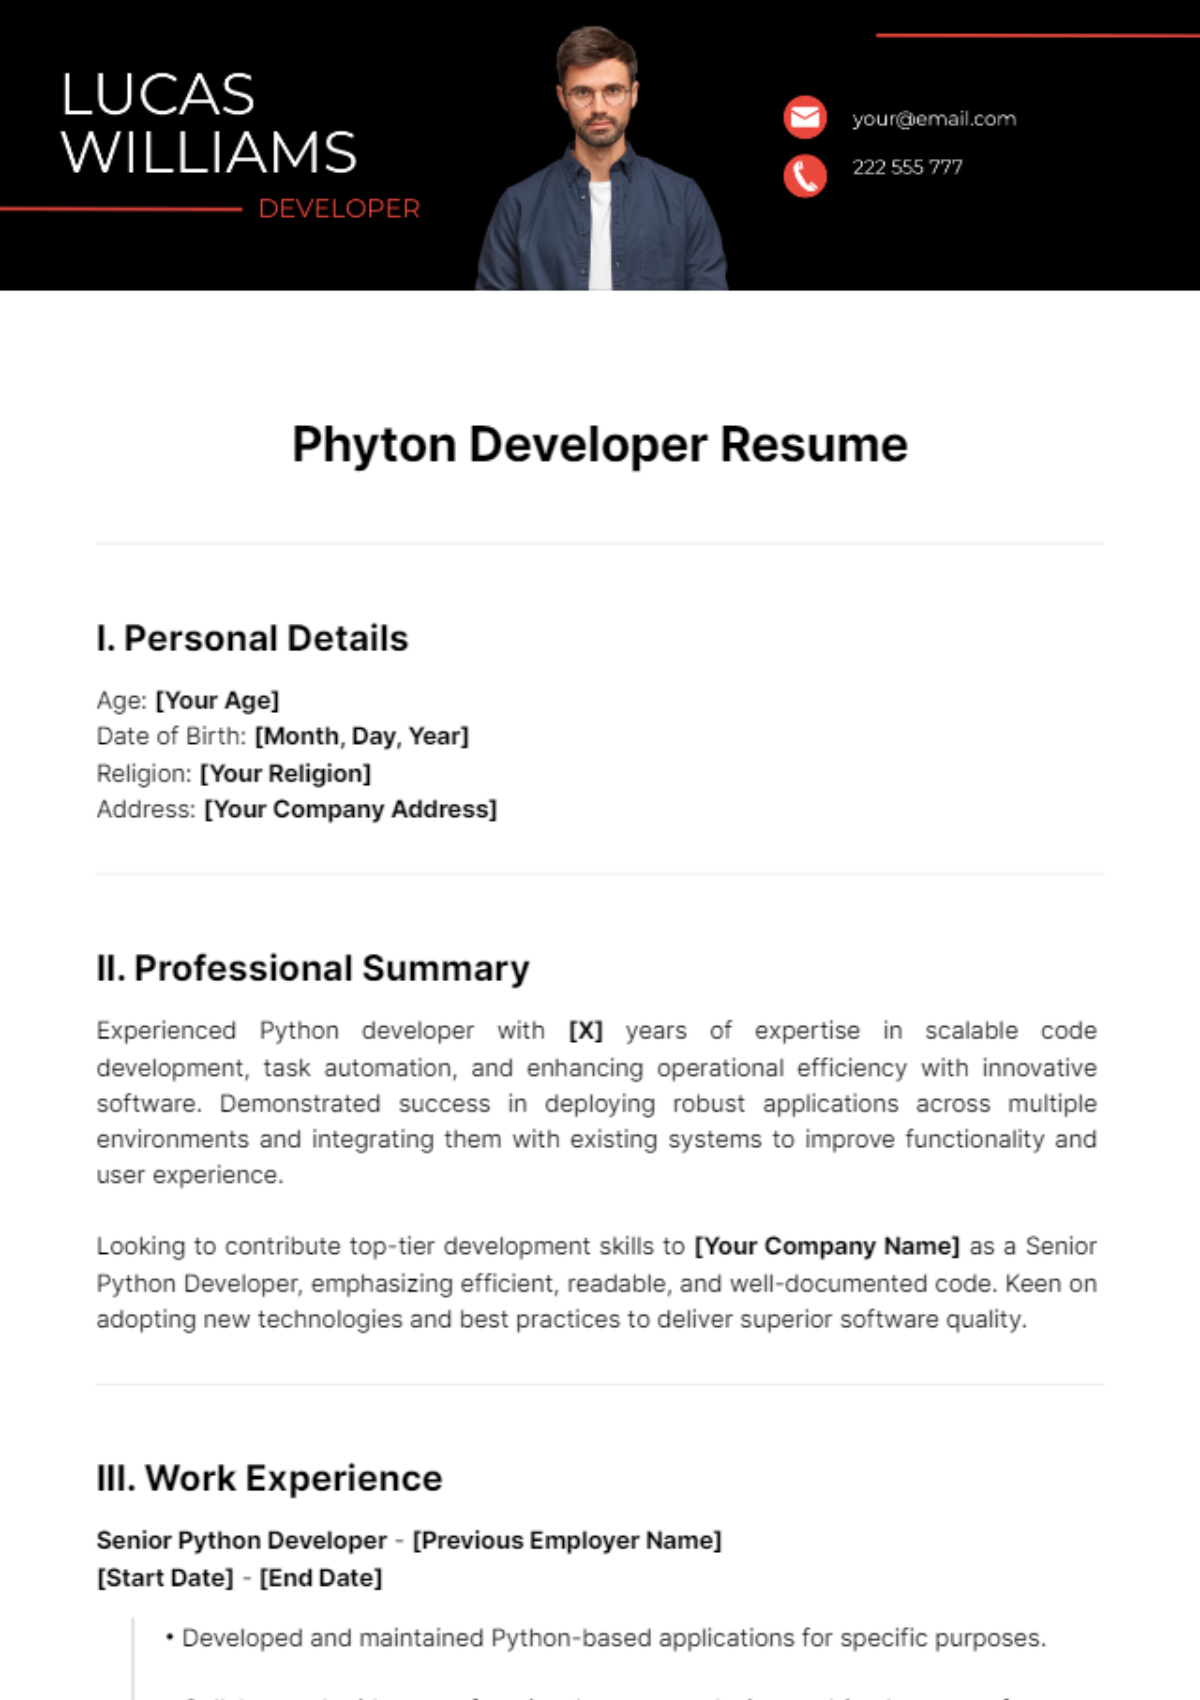 Phyton Developer Resume Template